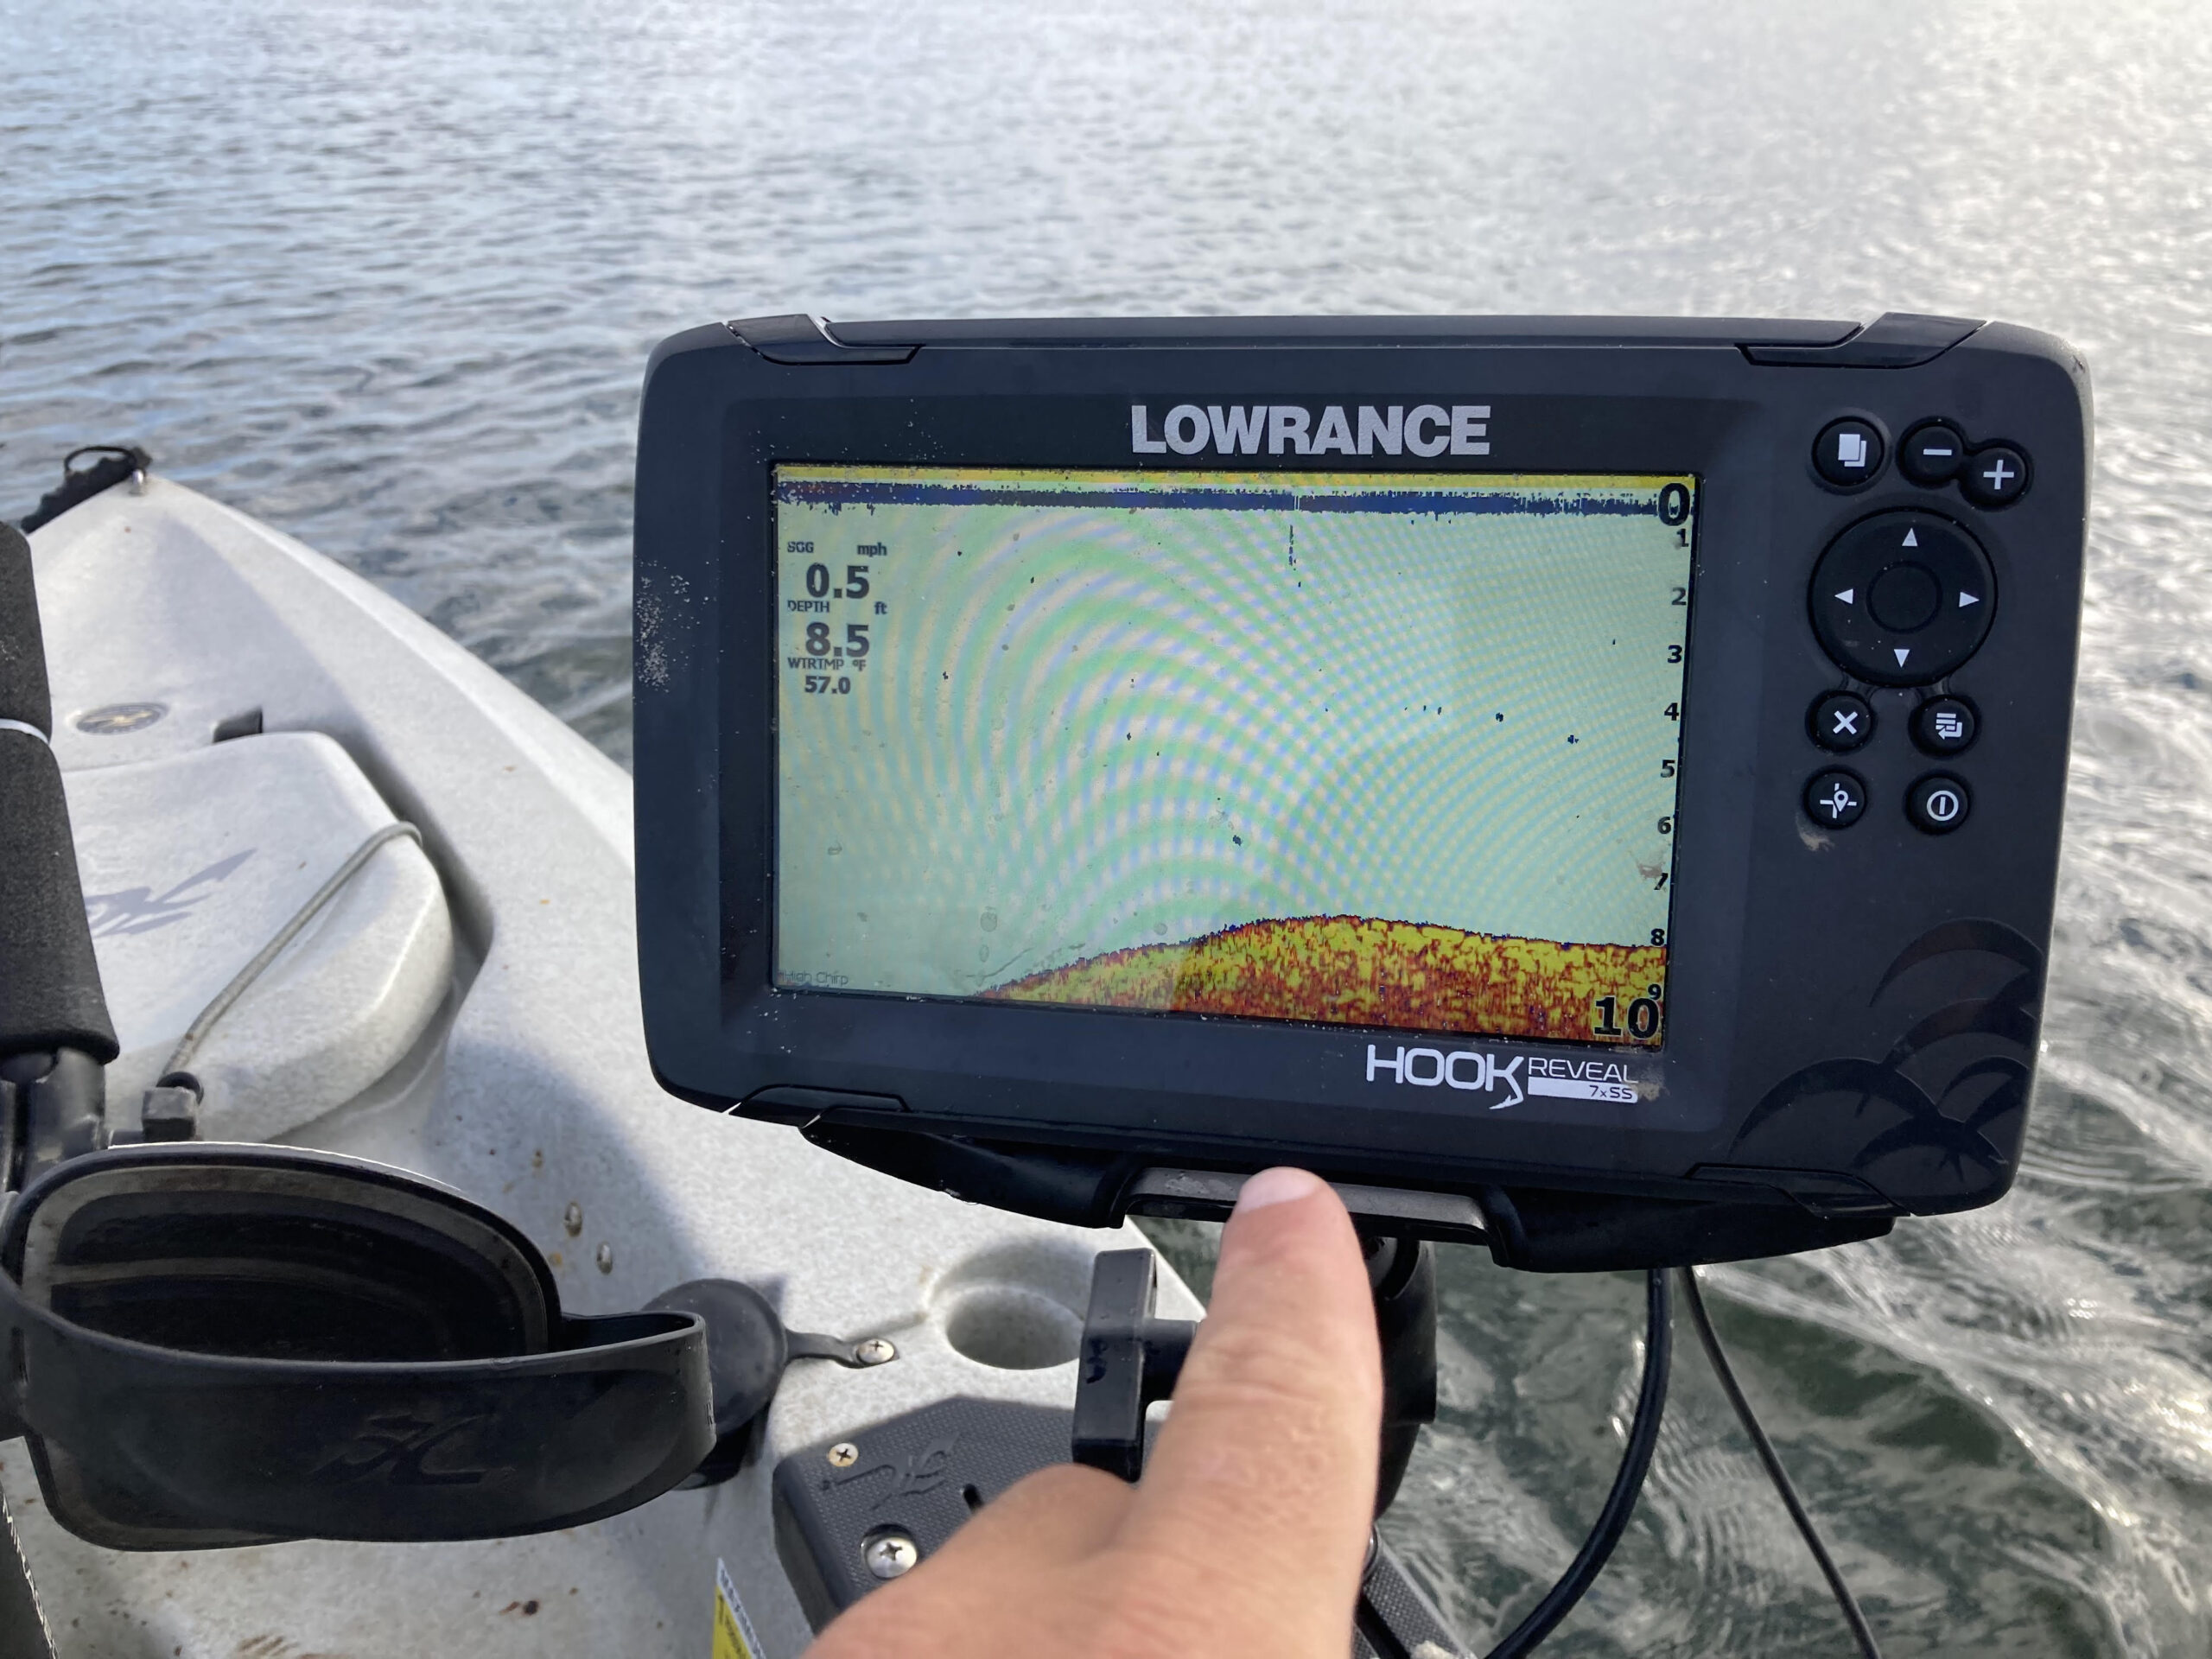 Hook²-7x TripleShot GPS Fishfinder buy now